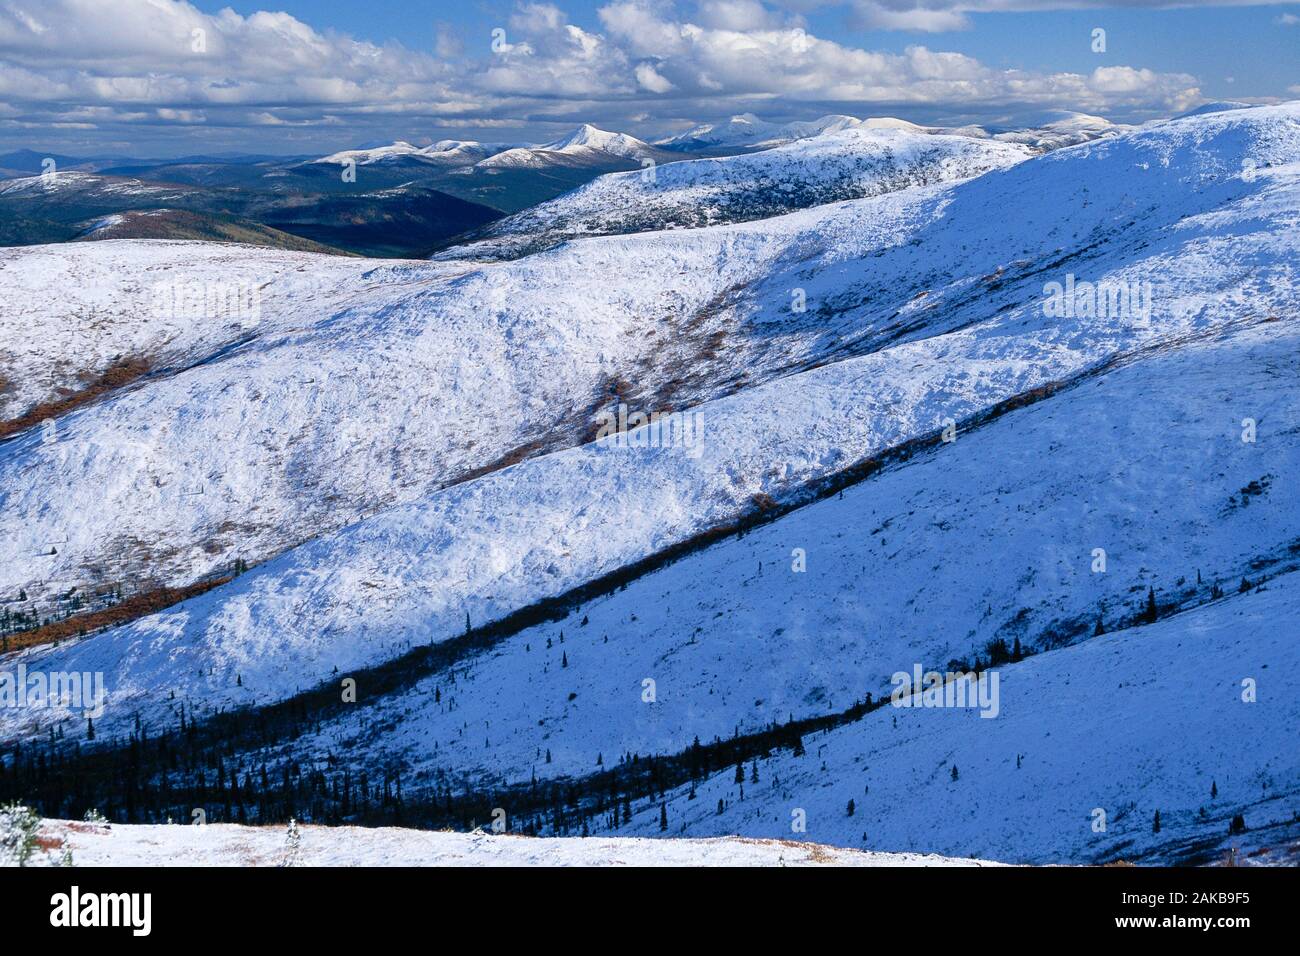 Paysage avec des collines enneigées en hiver, près de Dawson City, territoire du Yukon, Canada Banque D'Images